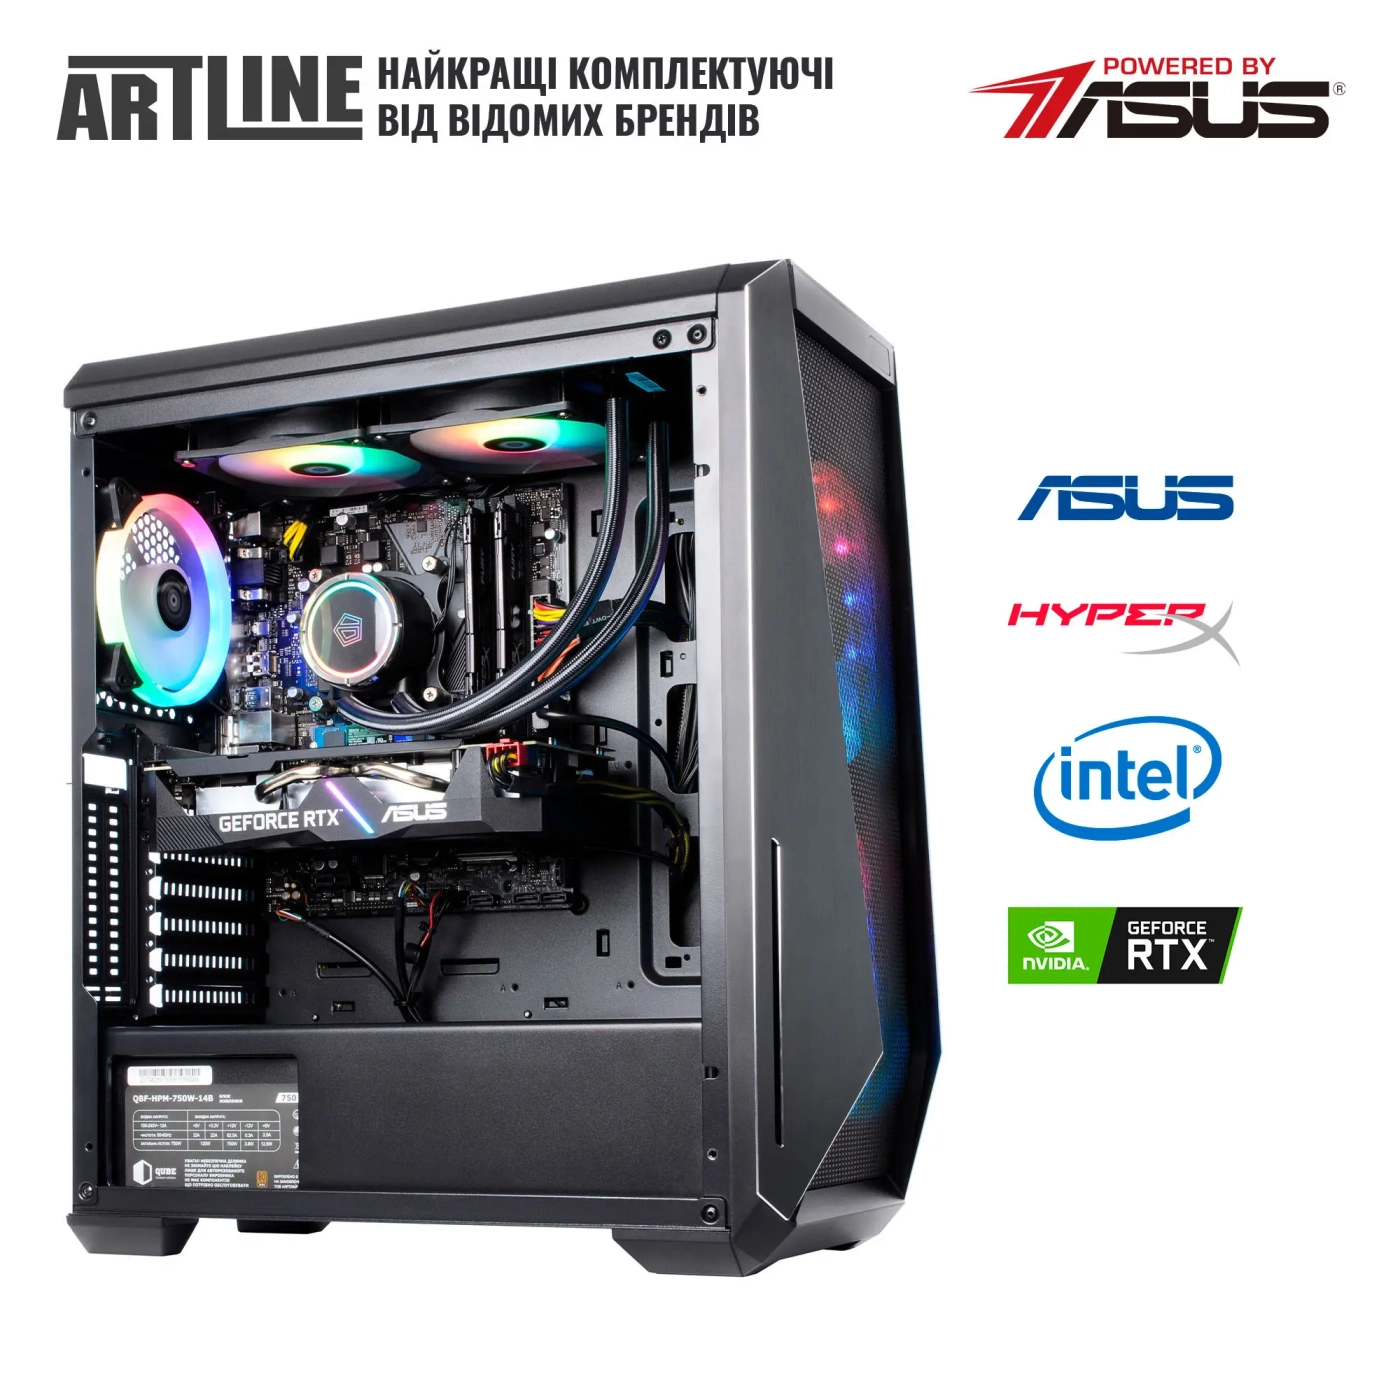 Купить Компьютер ARTLINE Gaming X77v99 - фото 9